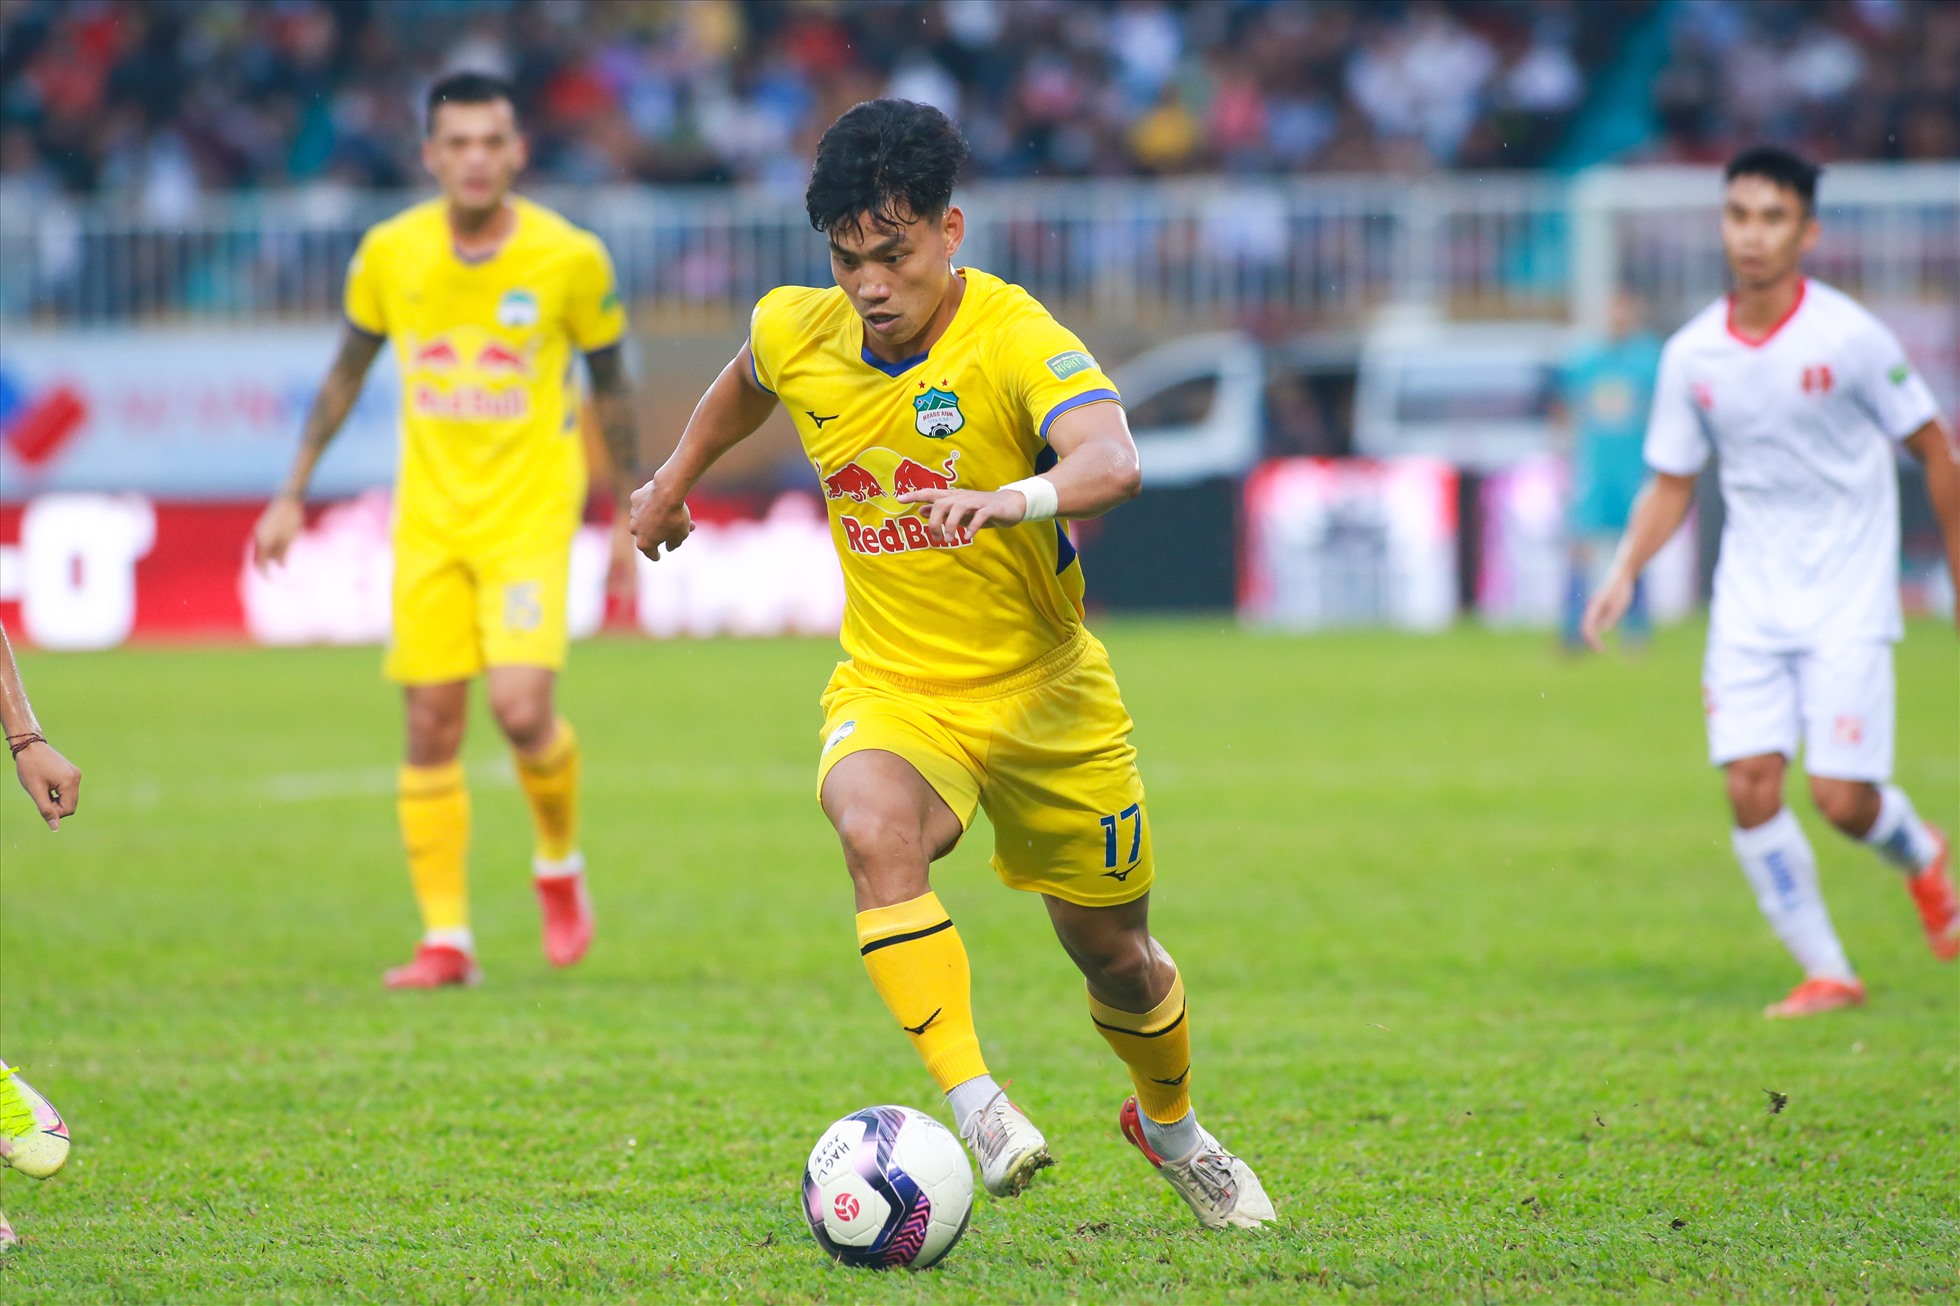 Trận thua Hải Phòng khiến Hoàng Anh Gia Lai bị chính đối thủ vượt qua trên bảng xếp hạng. Đội bóng của huấn luyện viên Kiatisak rơi xuống vị trí thứ 4 với 19 điểm sau 12 trận đã đấu, kém đội đầu bảng Hà Nội 7 điểm.